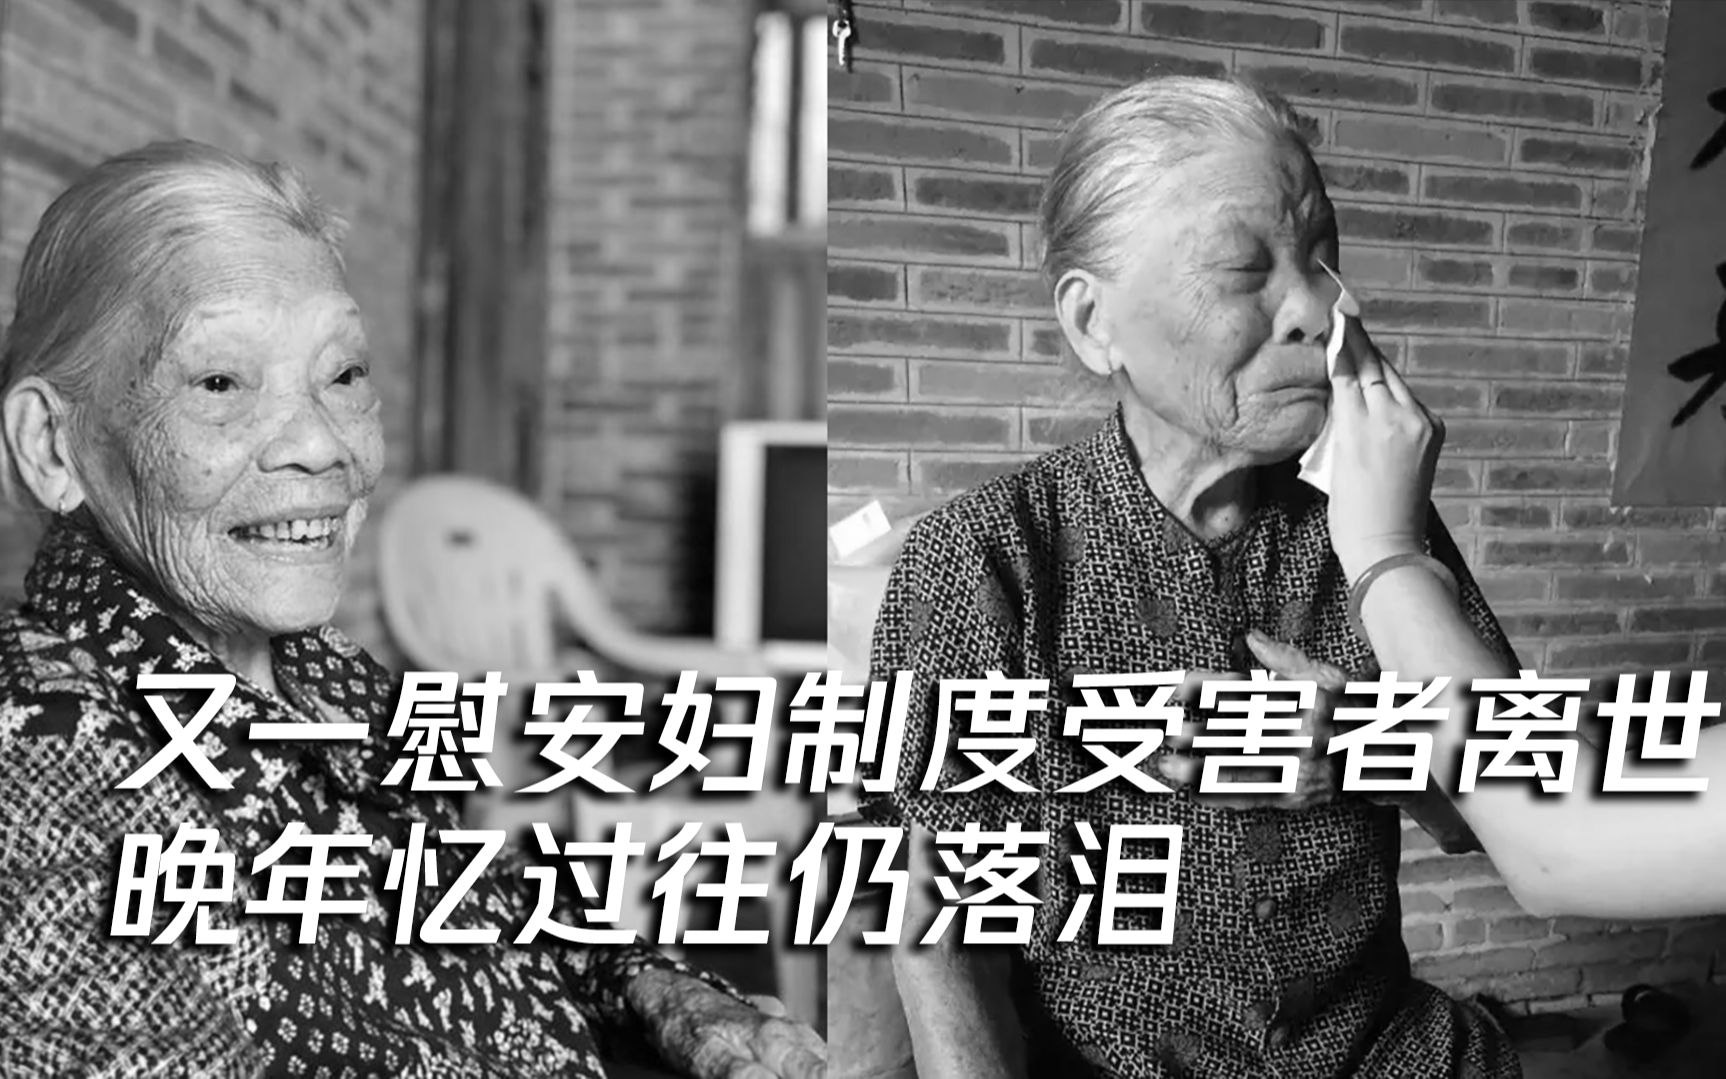 又一慰安妇制度受害者陈连村老人离世 享年96岁 晚年忆过往仍落泪